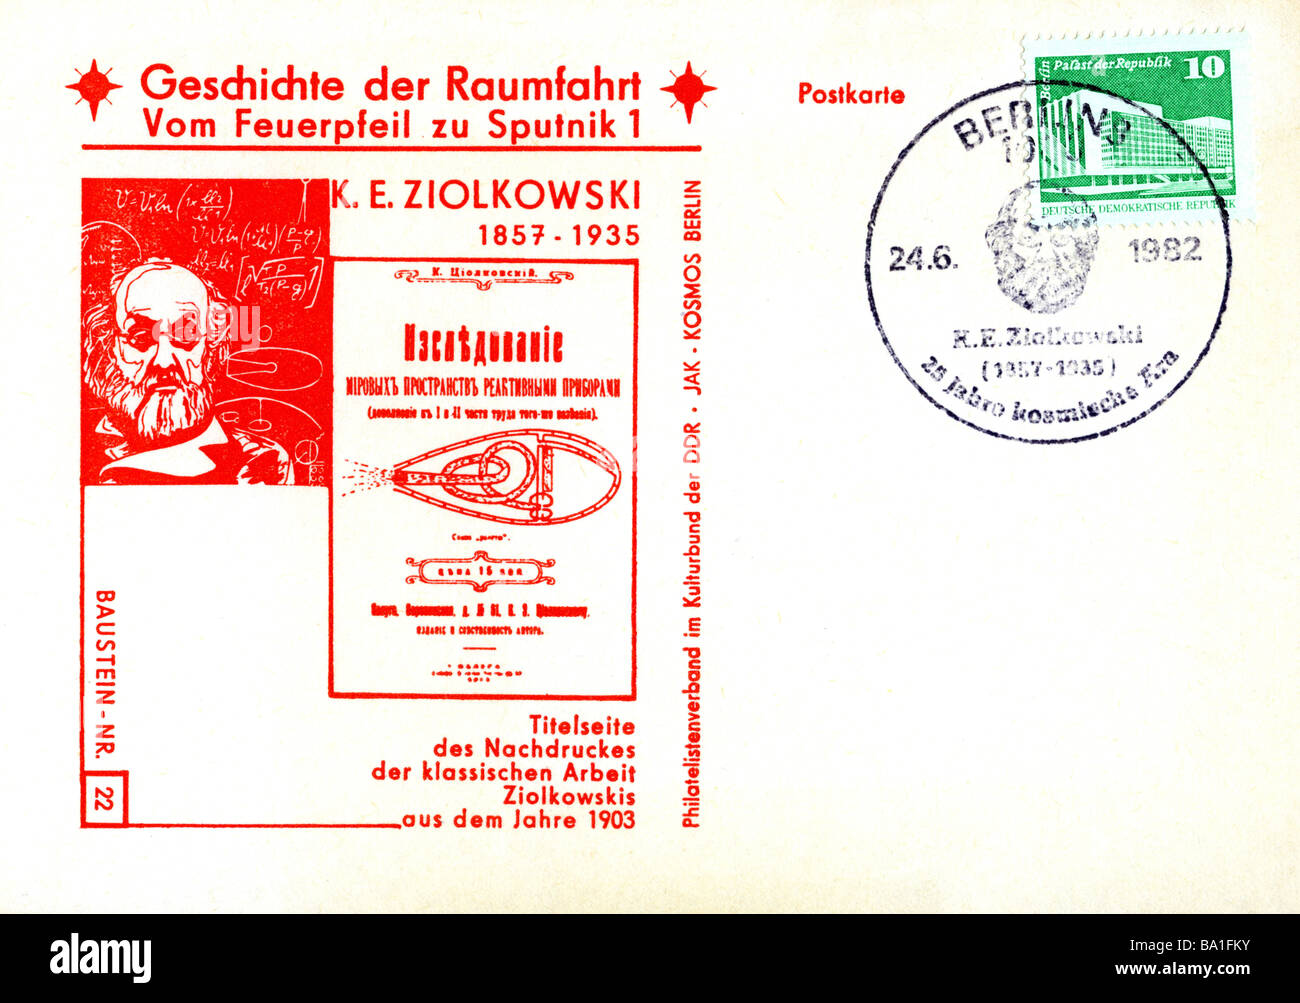 Ziolkowski, Konstantin Eduardowitsch, 17.9.1857 - 19.9.1935, carte postale, médecin Russe, République démocratique allemande, estampillé 24 Banque D'Images